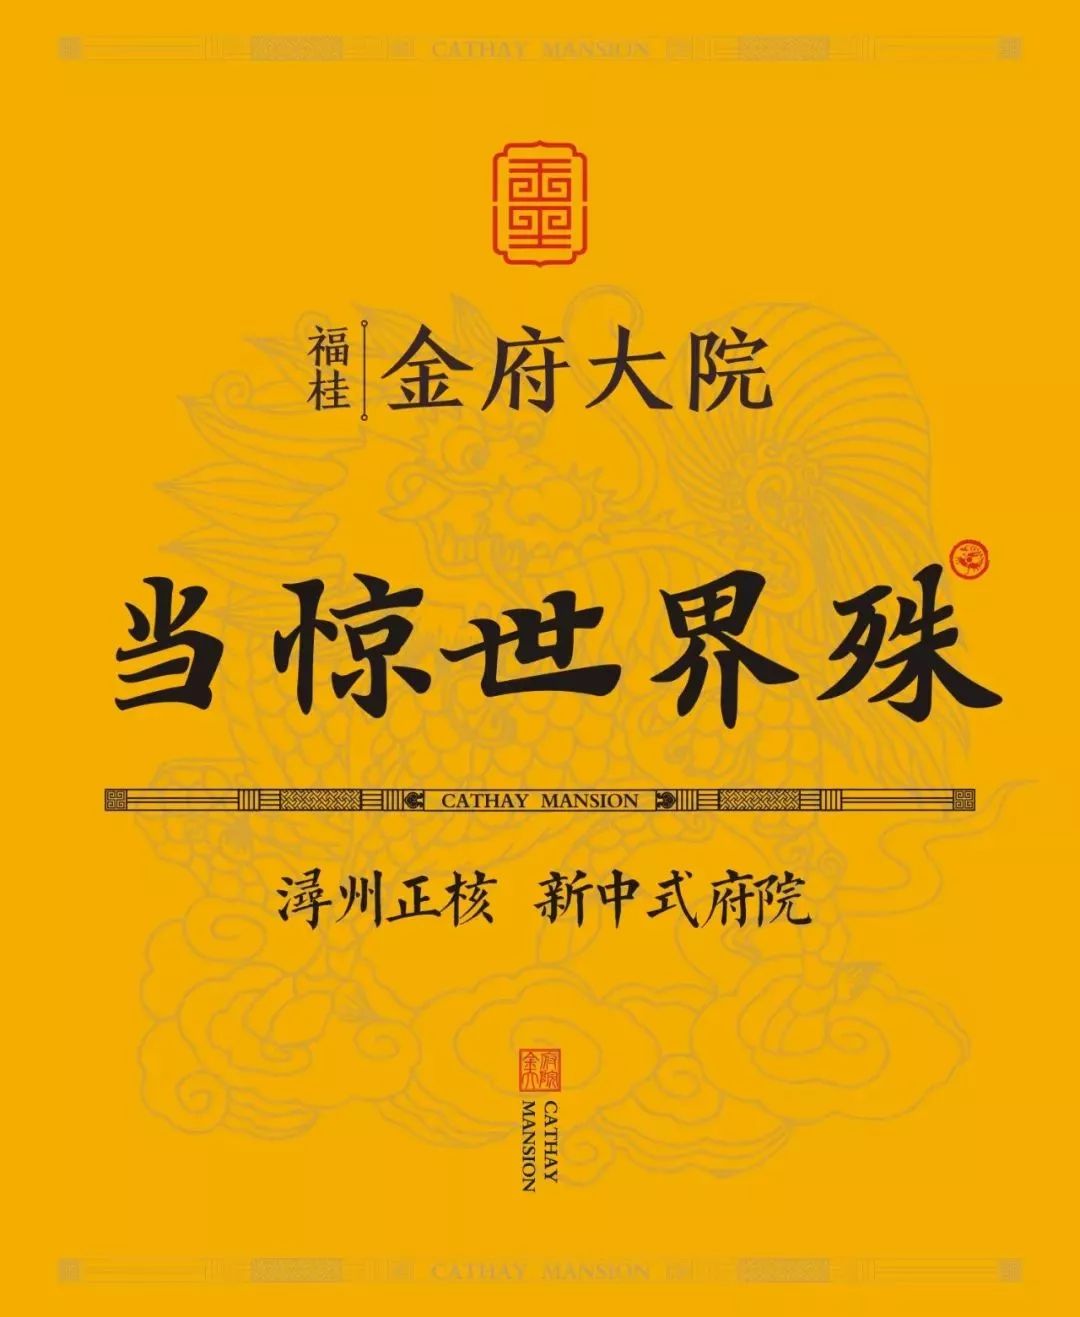 福桂金府大院 经过精心设计和精心规制 将传统文化的规制神韵 与当代